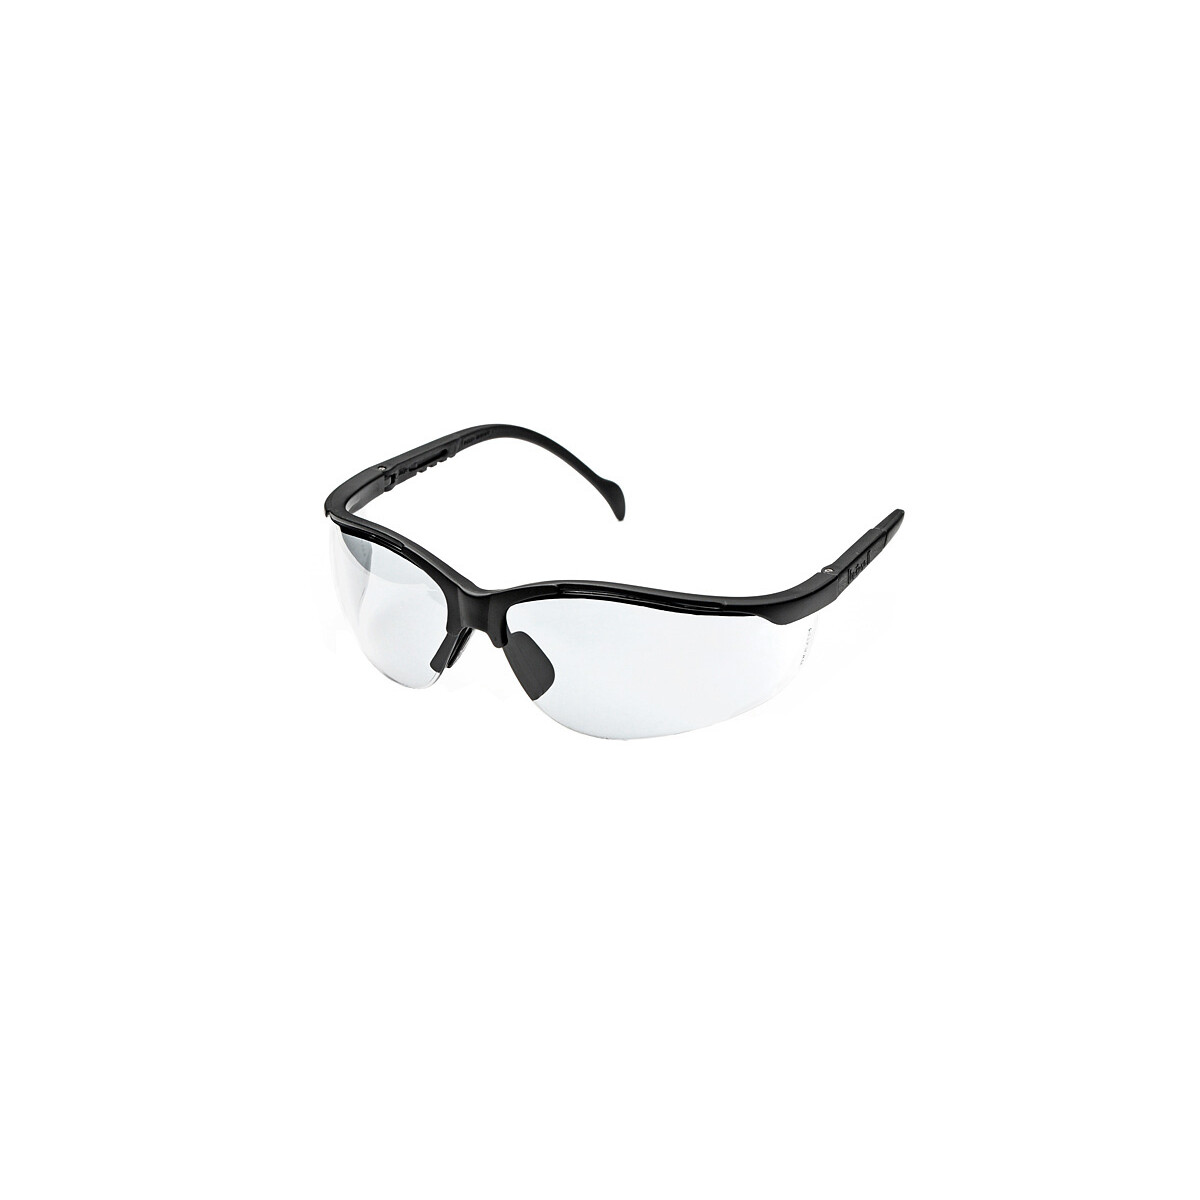 Ballistic Eyewear Venture 2 Clear